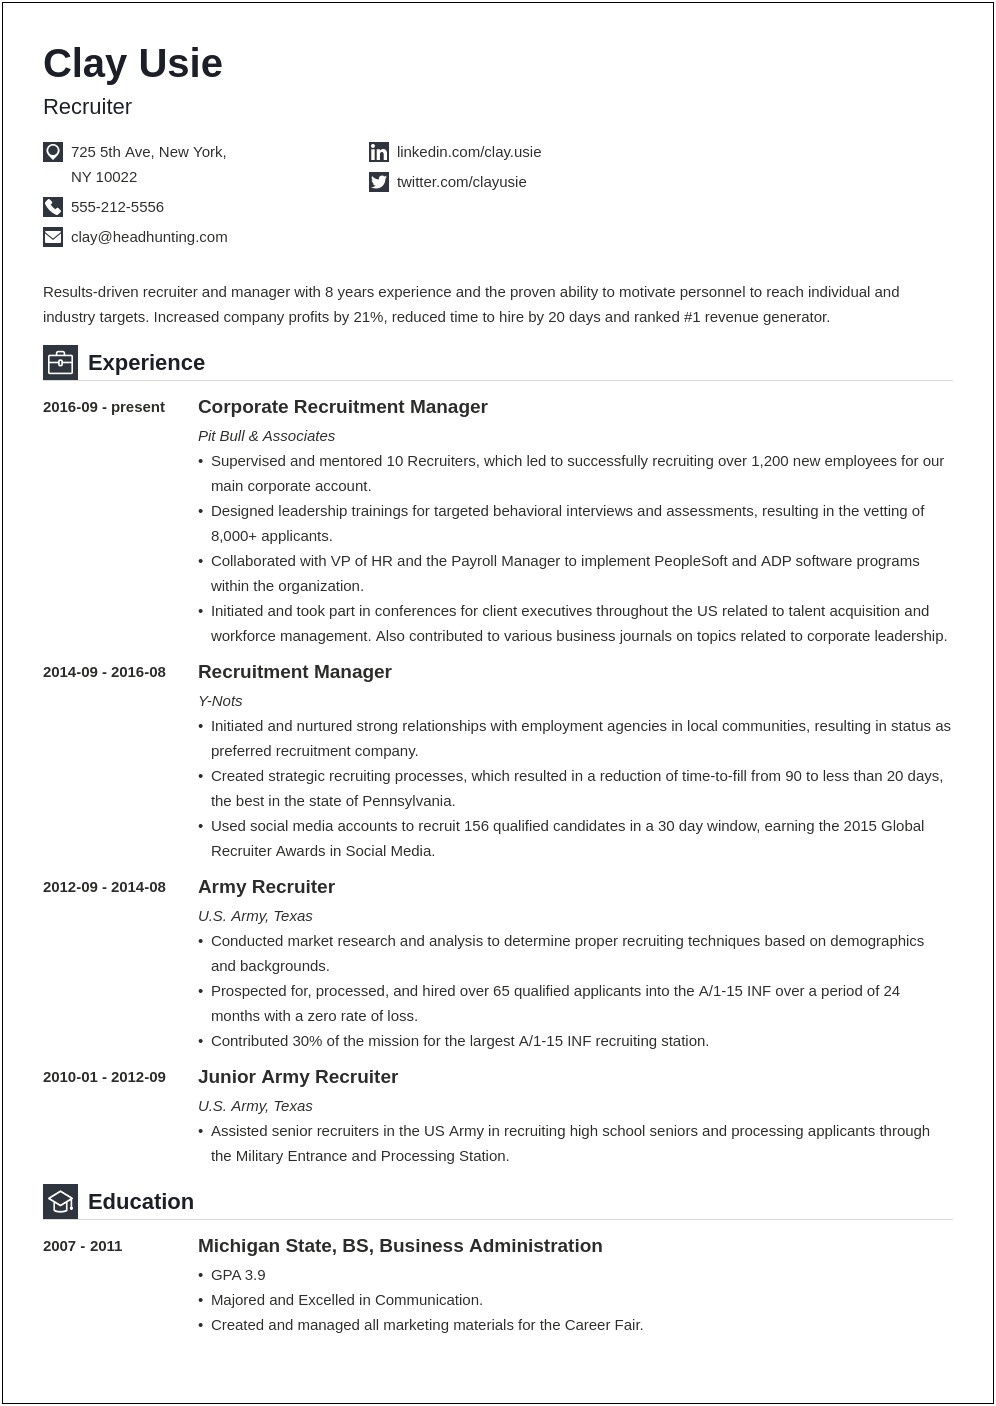 Sample Resume For Hr Recruiter Position Fresher